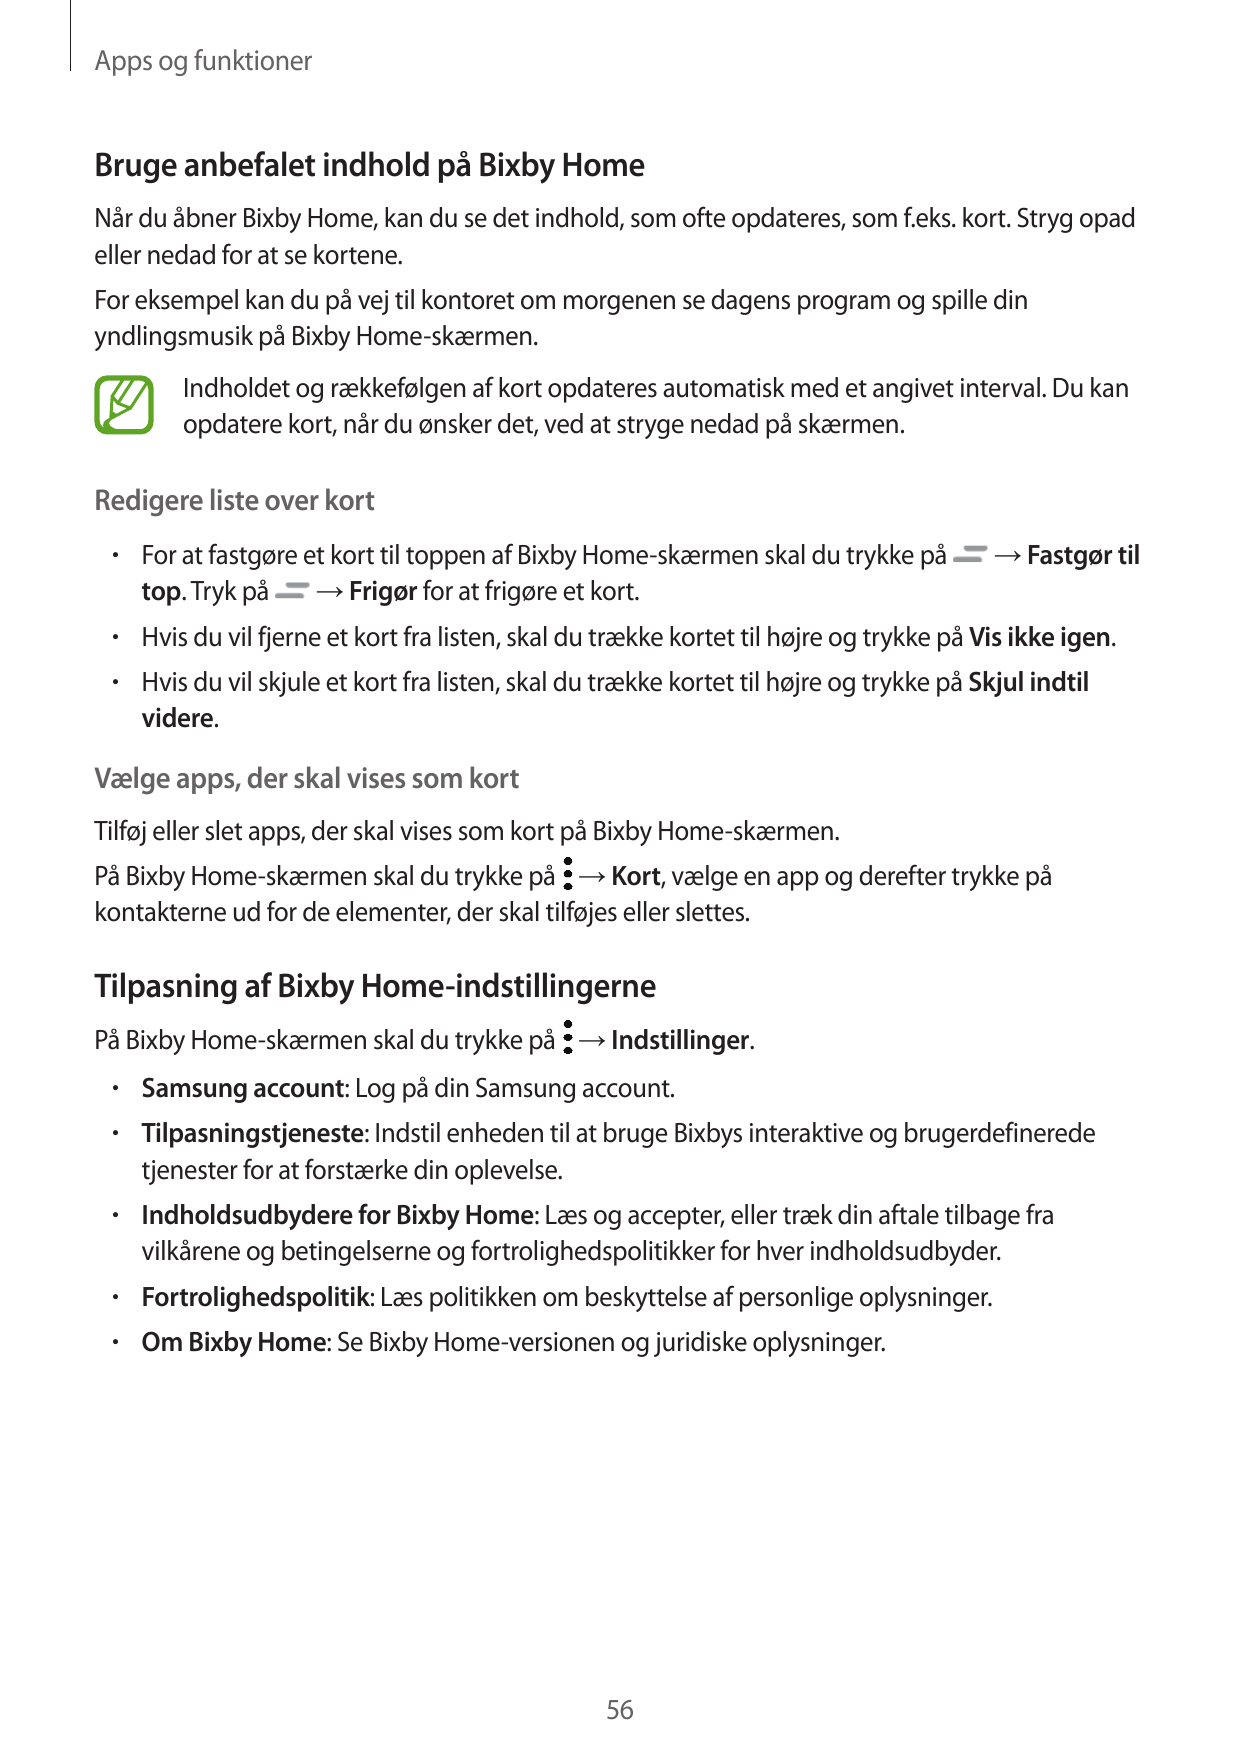 Apps og funktionerBruge anbefalet indhold på Bixby HomeNår du åbner Bixby Home, kan du se det indhold, som ofte opdateres, som f